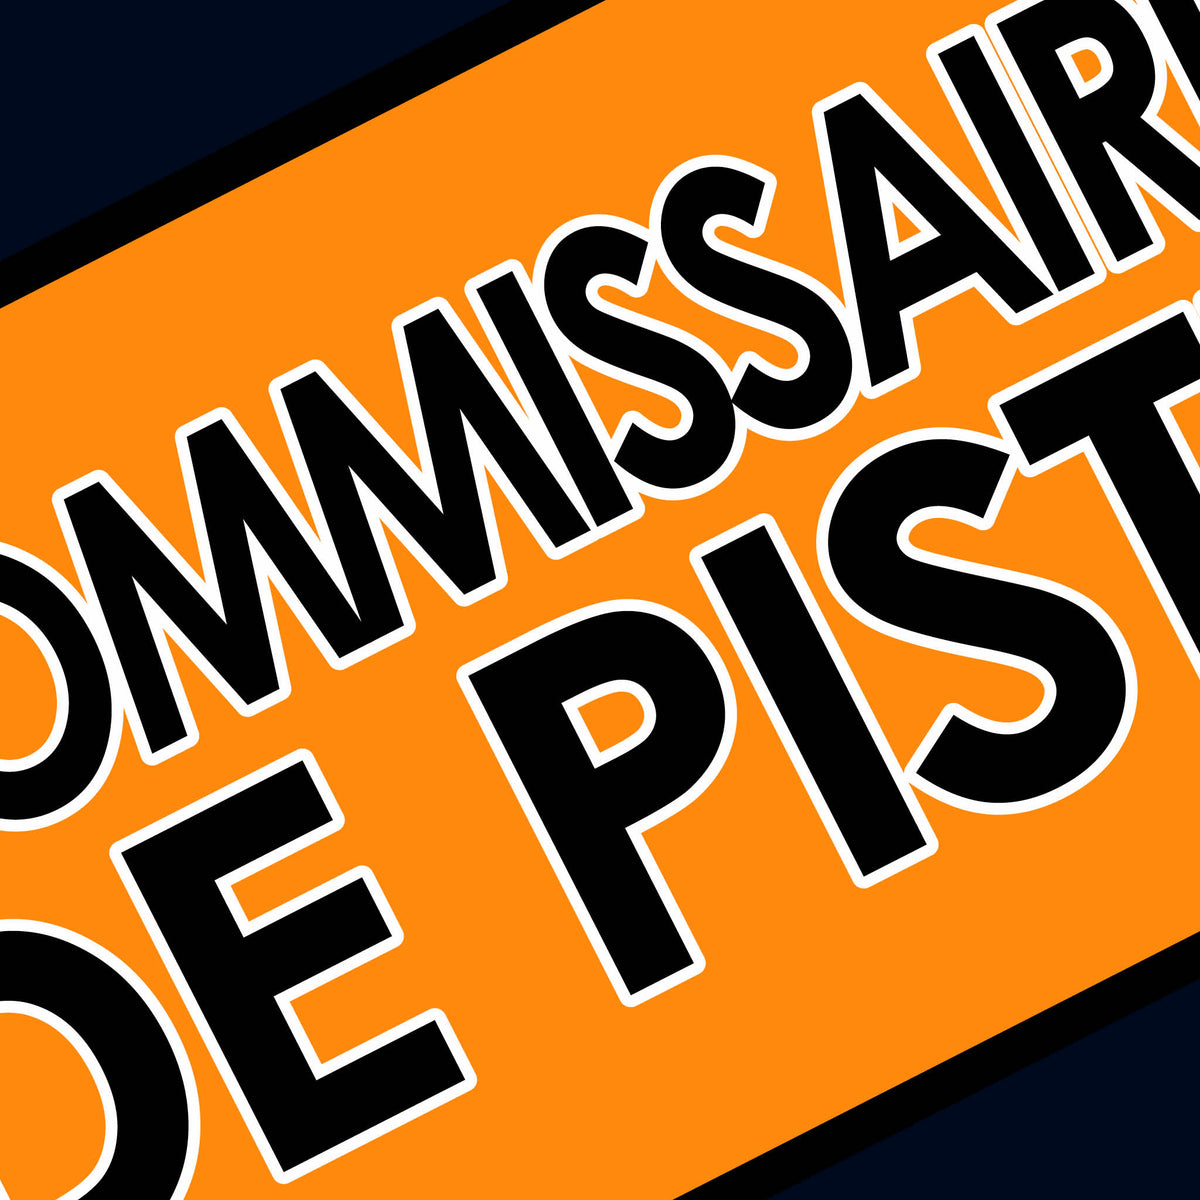 Commissaire de Piste Le Mans Marshal Sticker